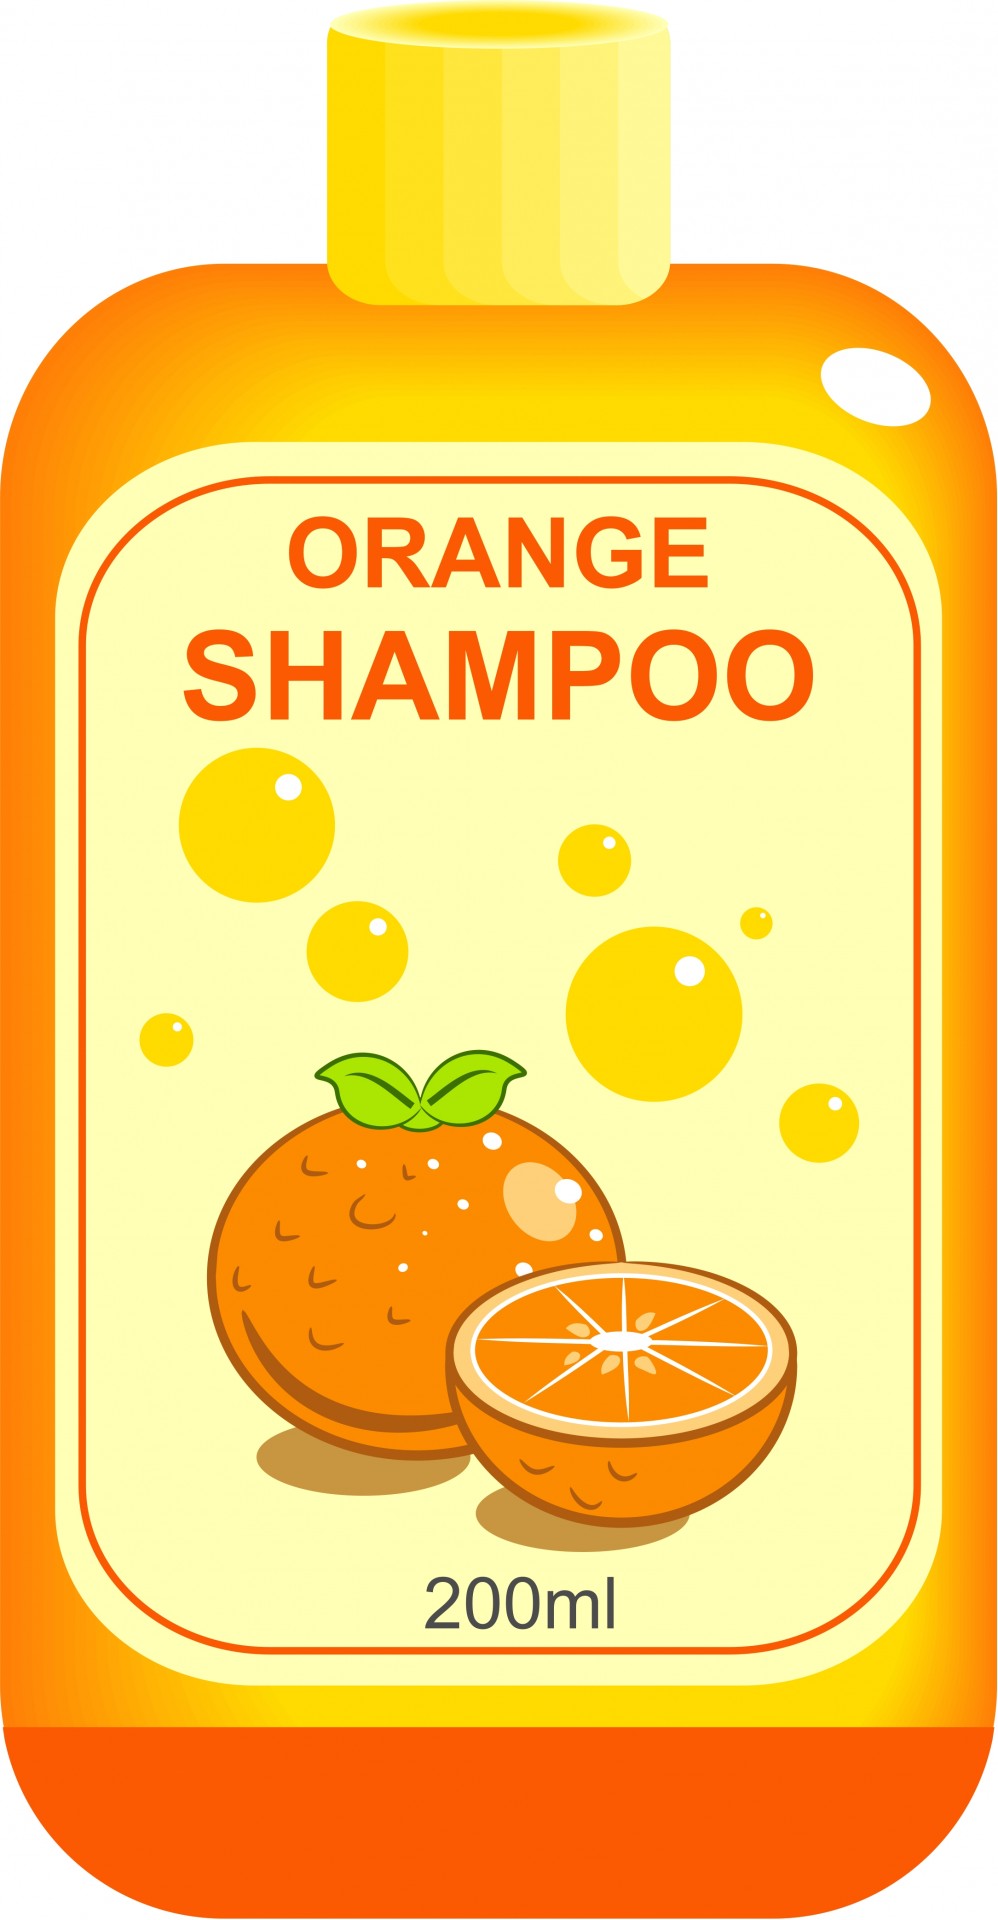 Bottle Of Shampoo Free Stock Photo